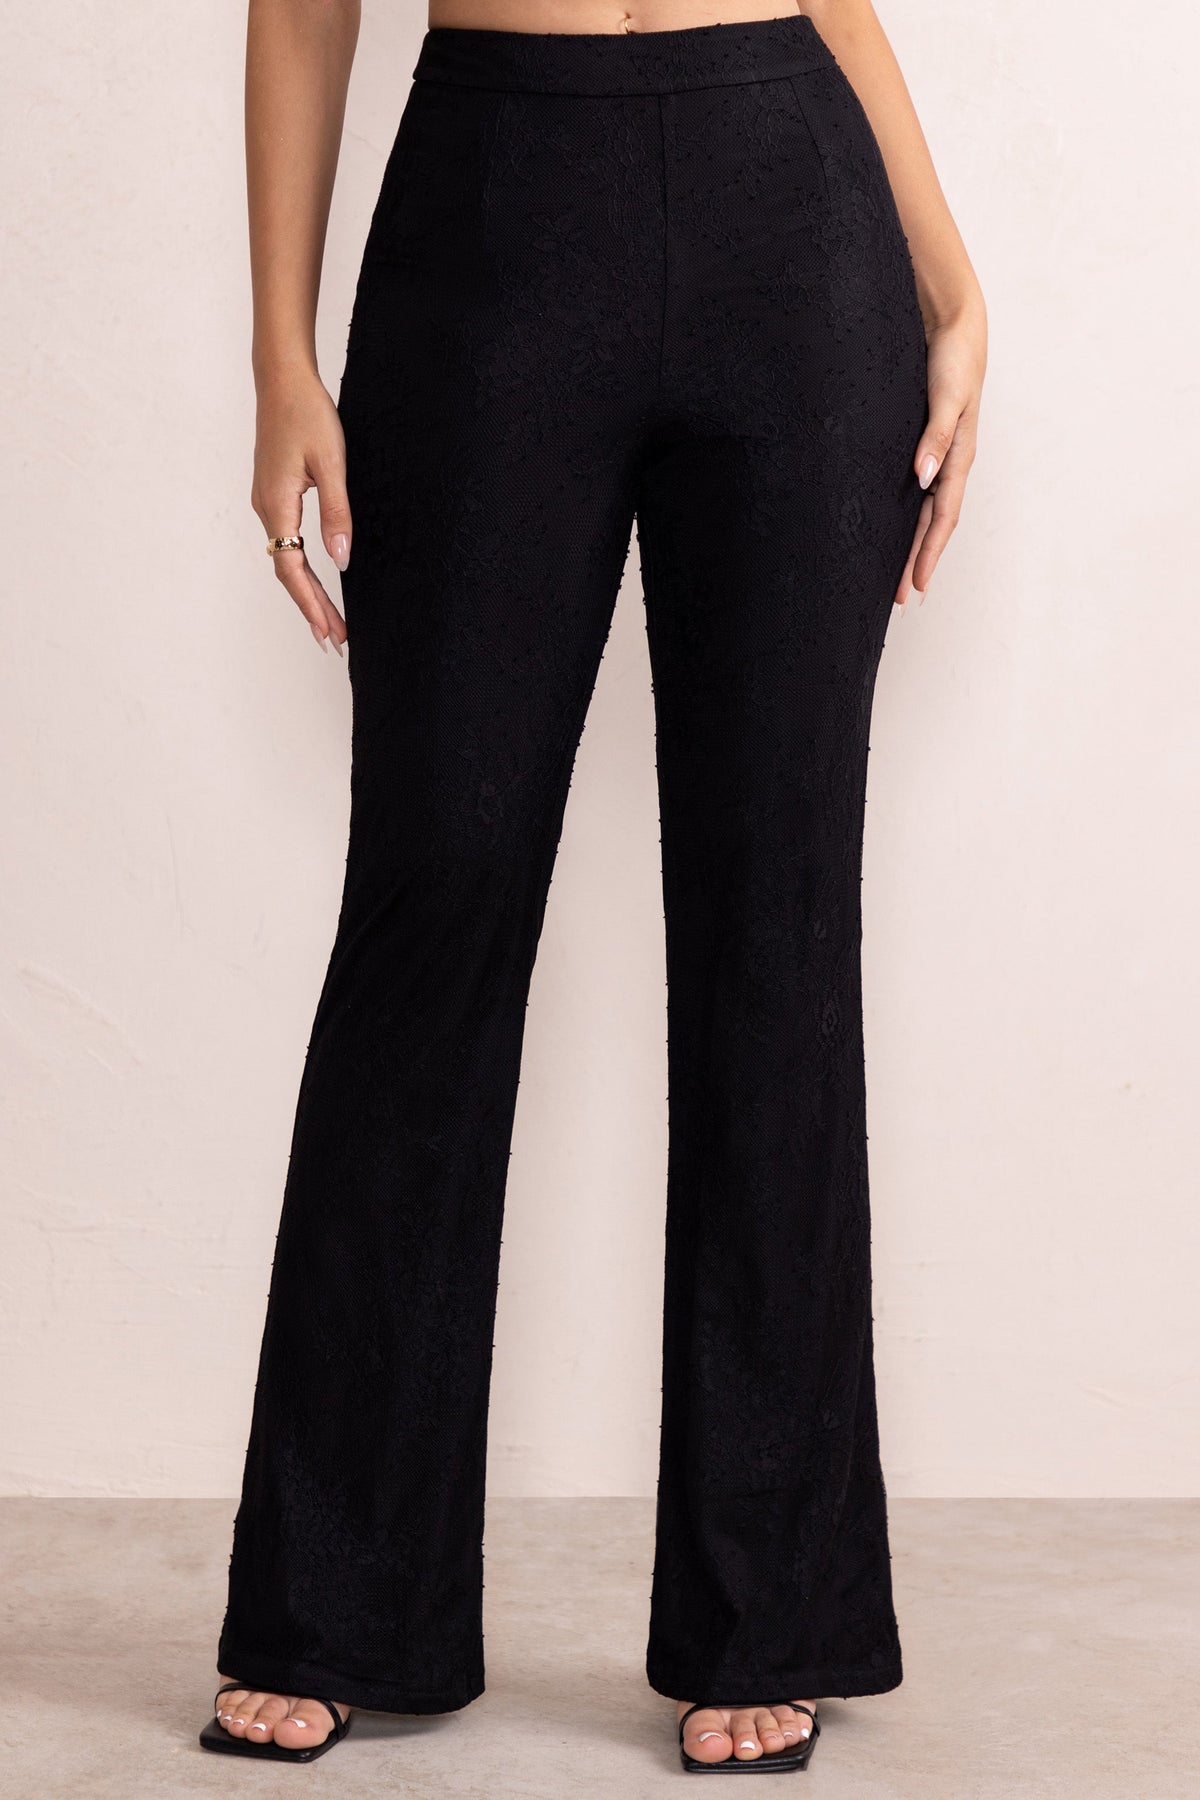 Buy Velvet Look Elastic Waistband Flared Pants Black For Women